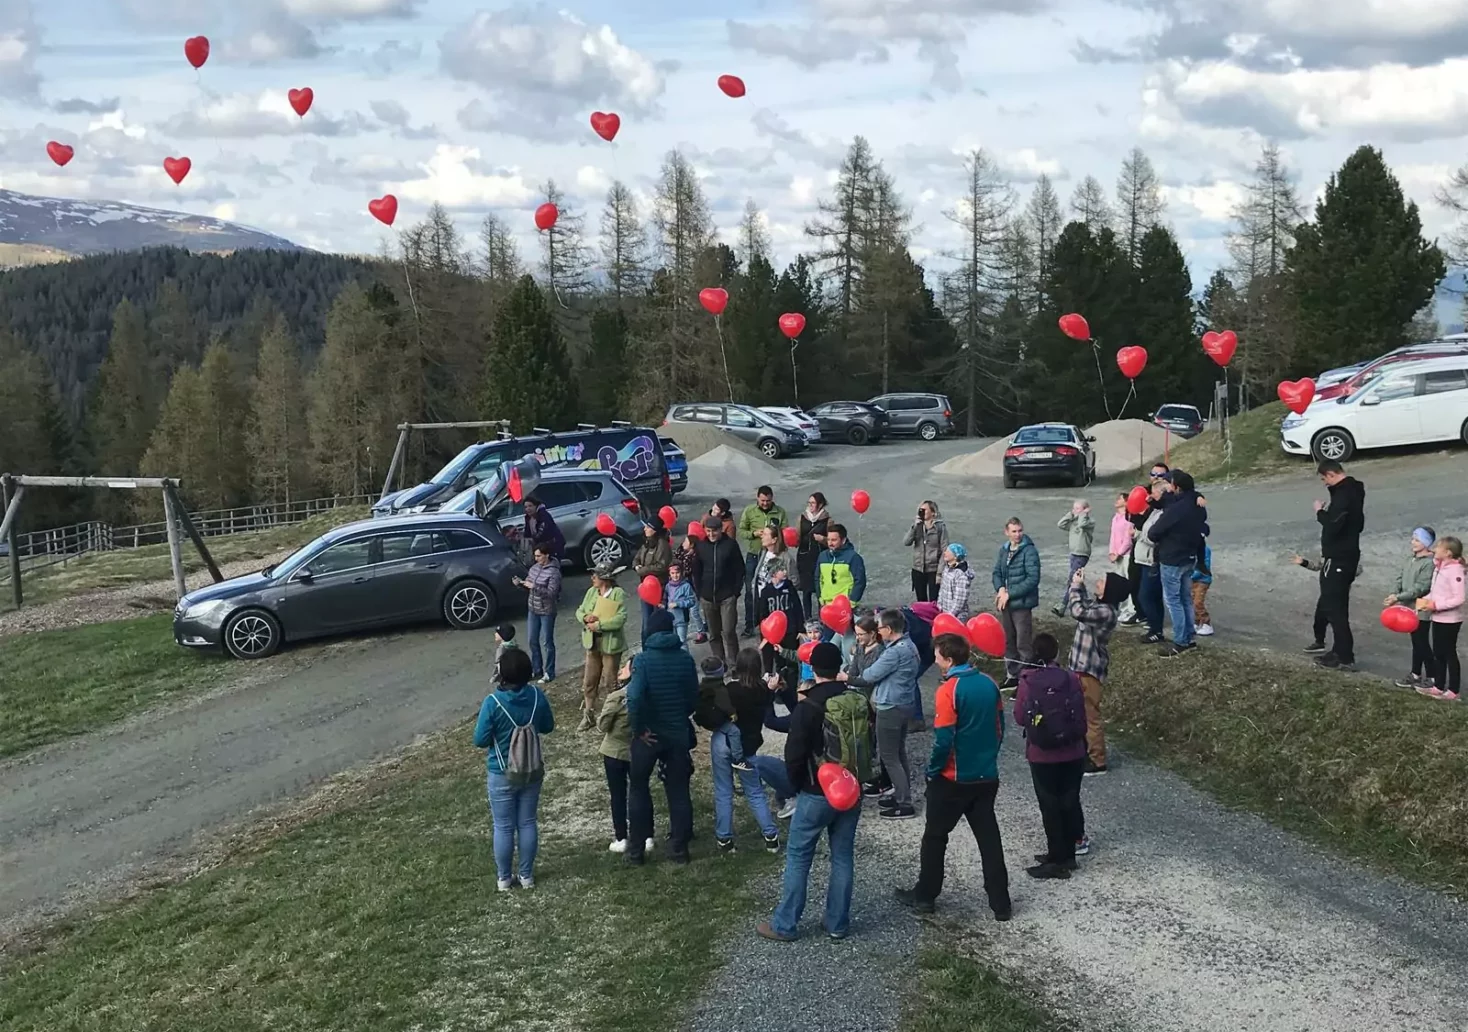 Foto in Beitrag von 5min.at: Zu sehen sind die herzkranken Kinder mit ihren Luftballons.